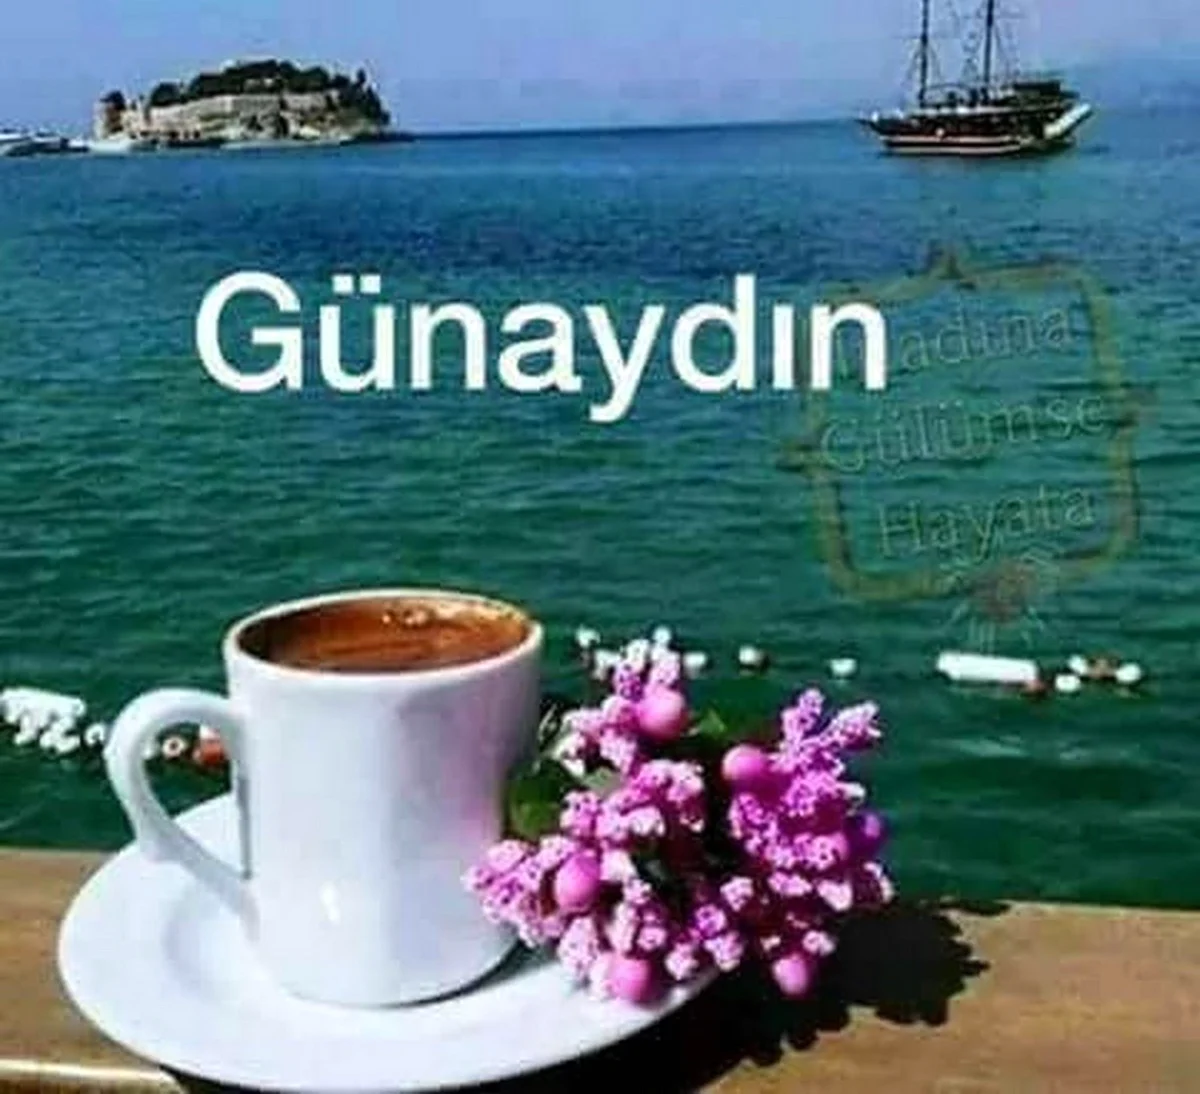 Пожелание доброго утра на турецком языке. Красивая картинка